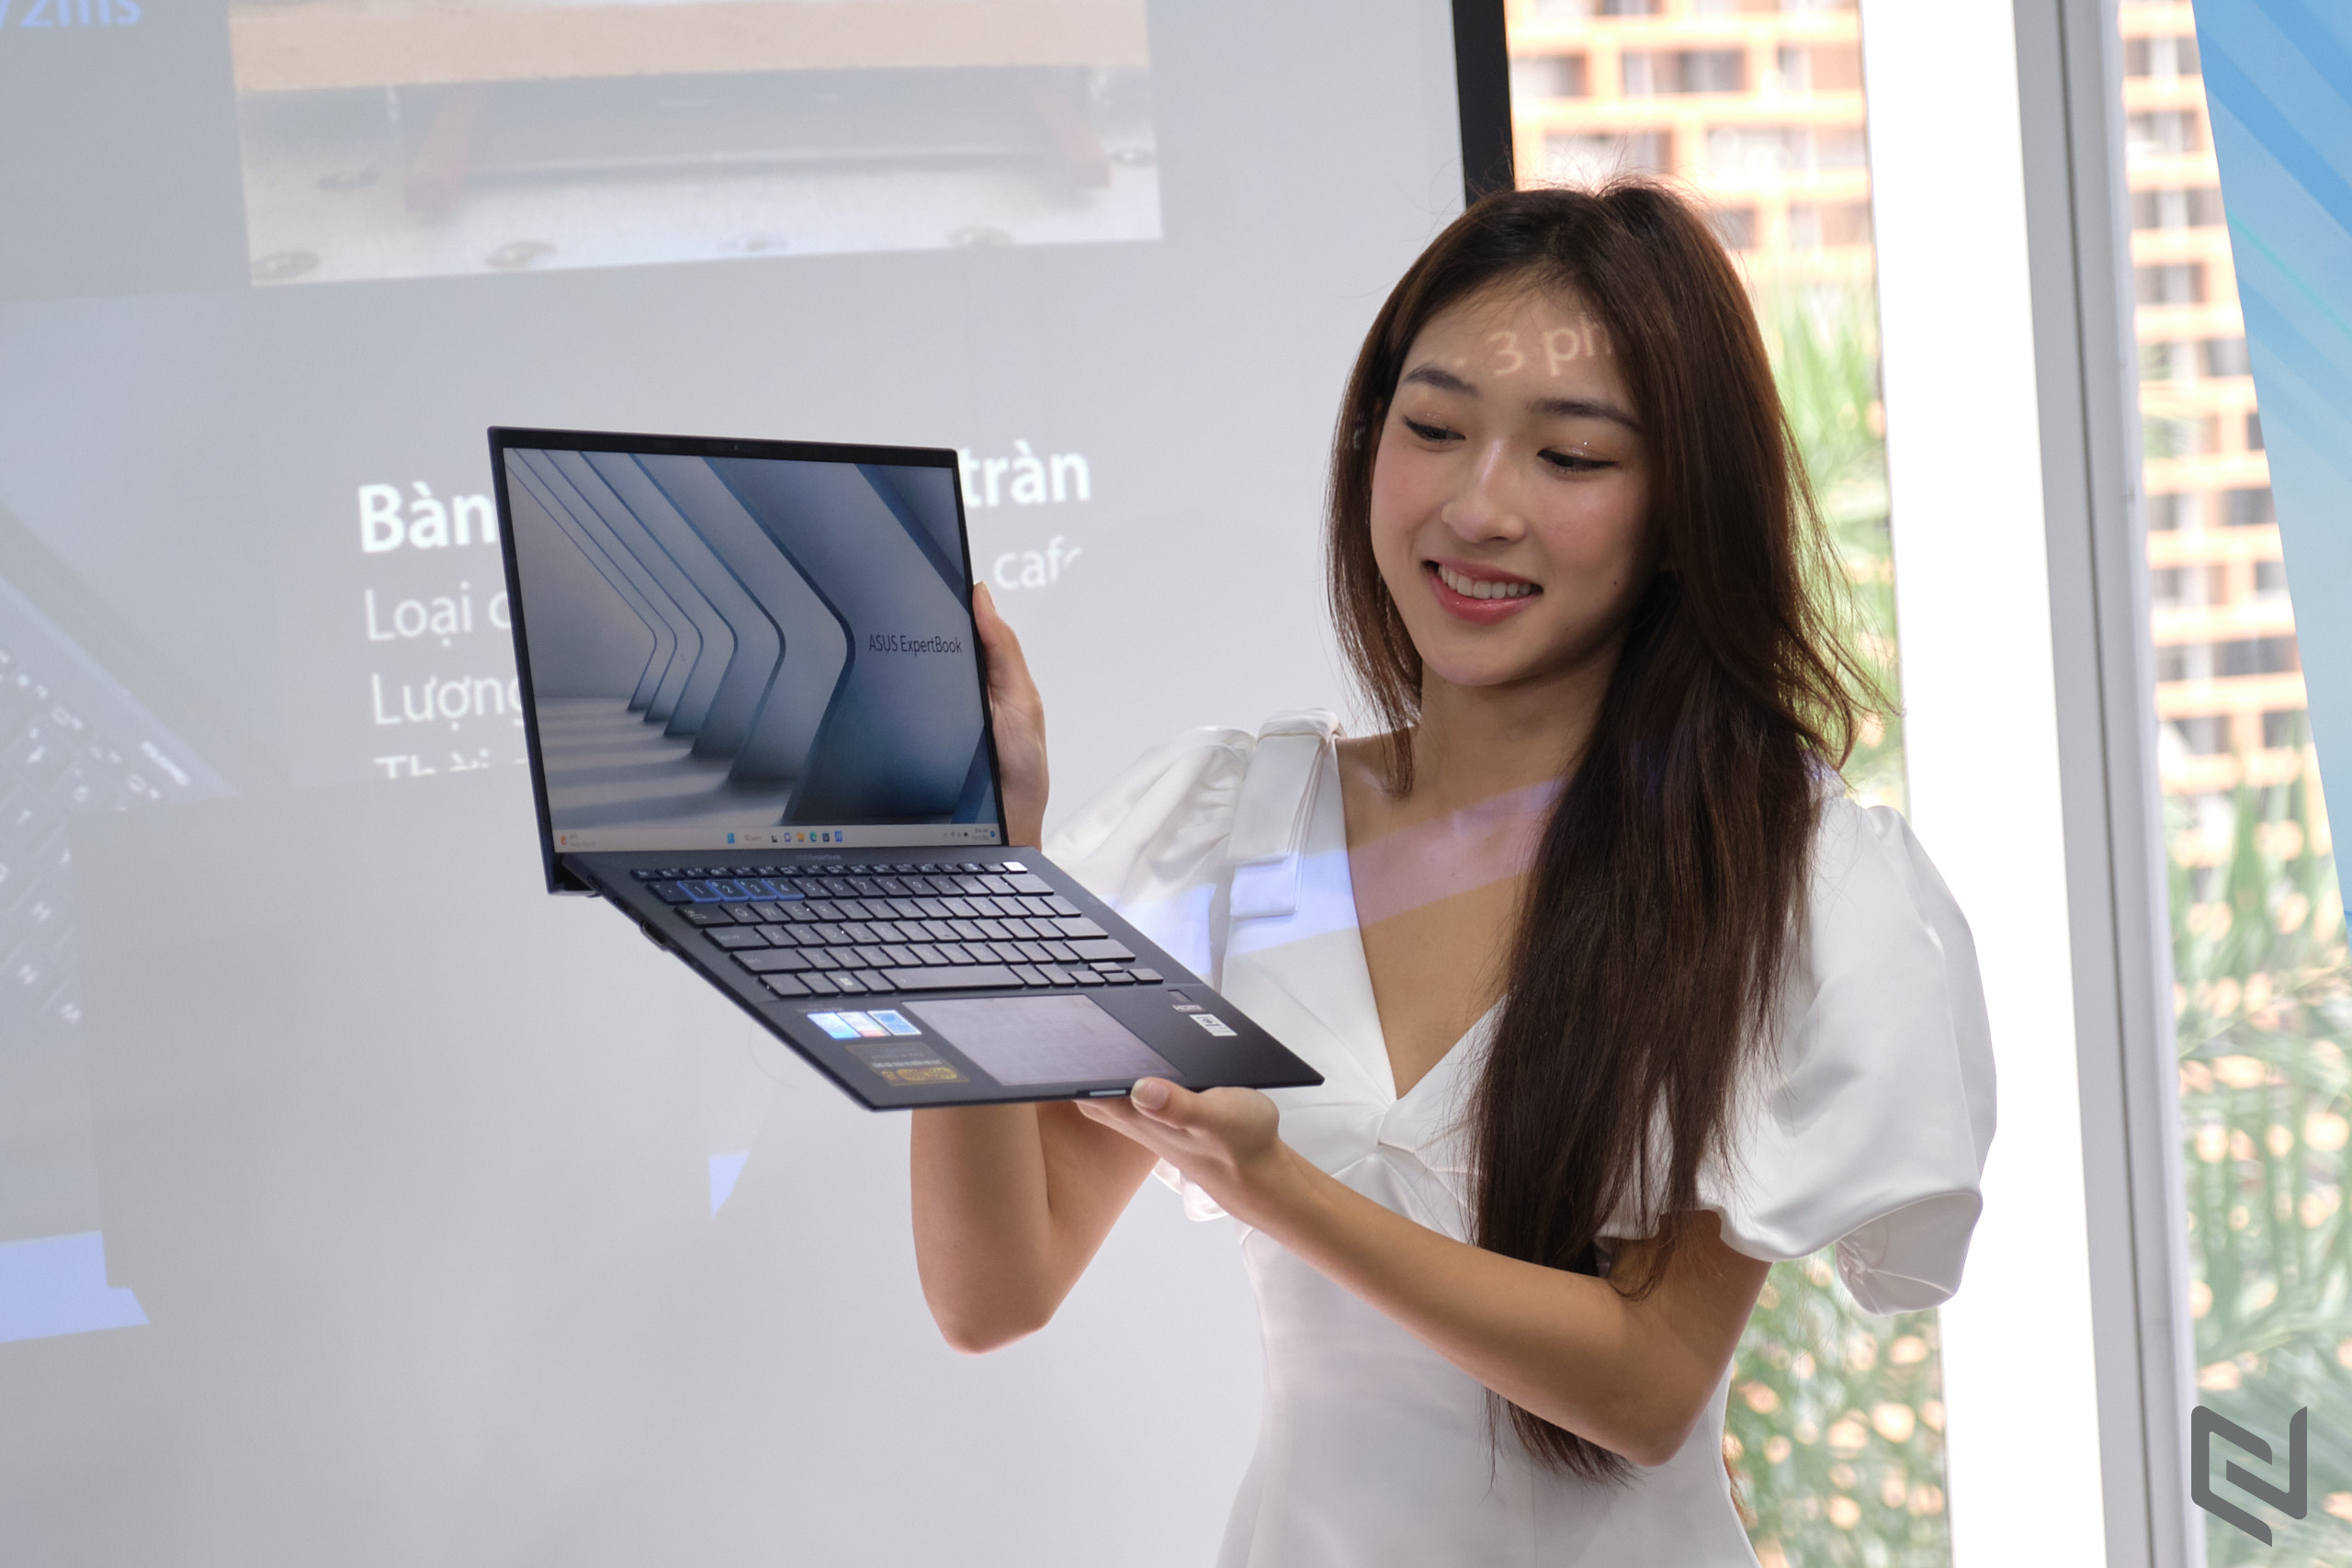 ASUS Việt Nam tổ chức sự kiện “Công nghệ mở lối - Chuyển đổi tương lai” giới thiệu dải Expert Series với vi xử lý Intel thế hệ mới